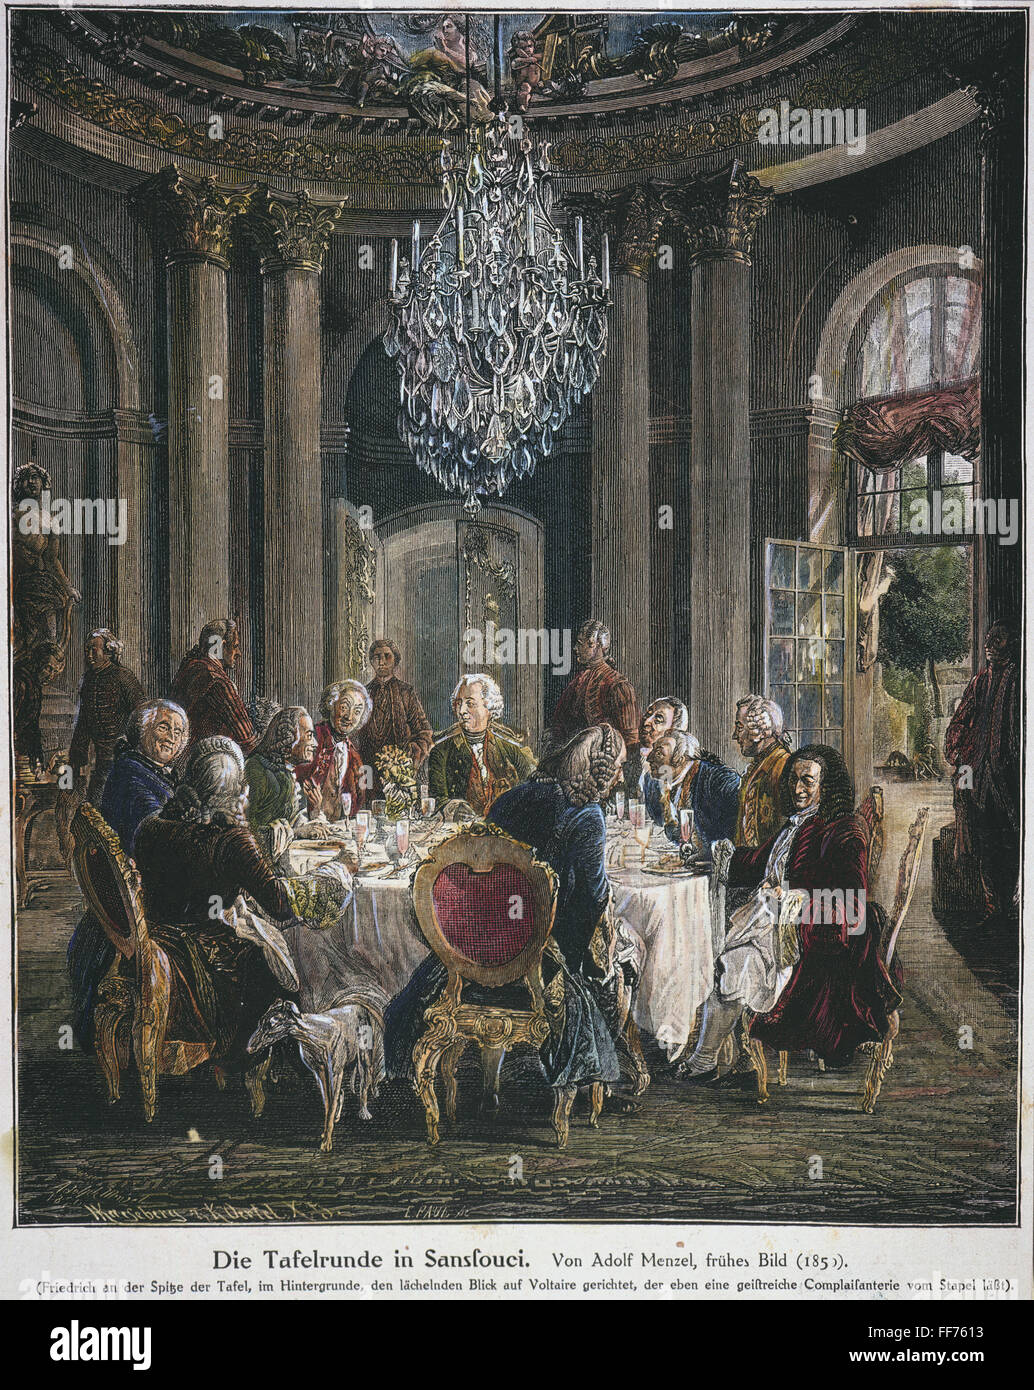 Federico II di Prussia /n(1712-1786) con Voltaire nella tavola rotonda a Sans Souci palace. Incisione su legno dopo Adolph von Menzel. Foto Stock